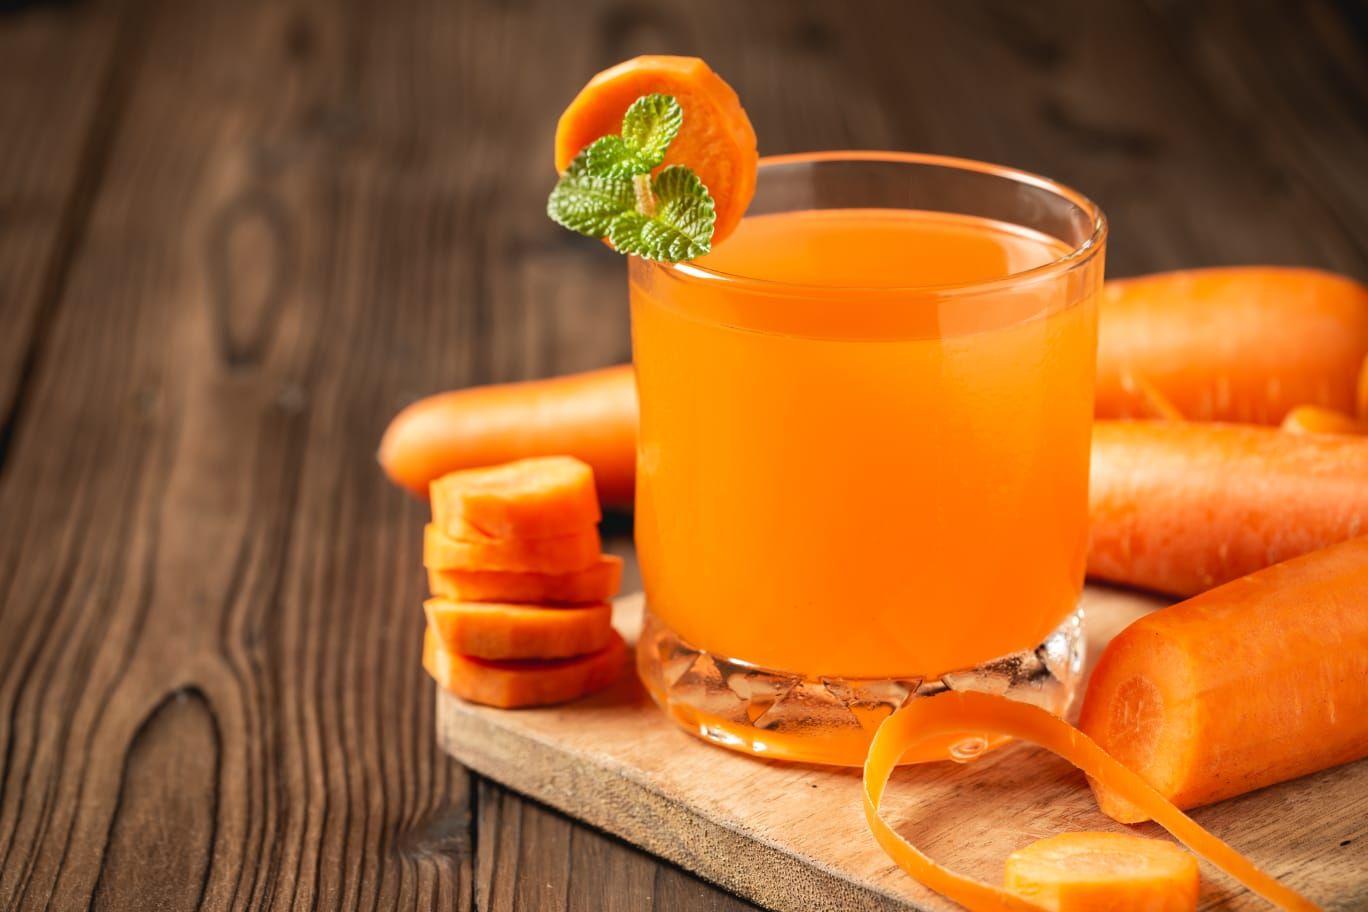  Jus wortel, beberapa manfaat mengkonsumsi untuk kesehatan dan kecantikan